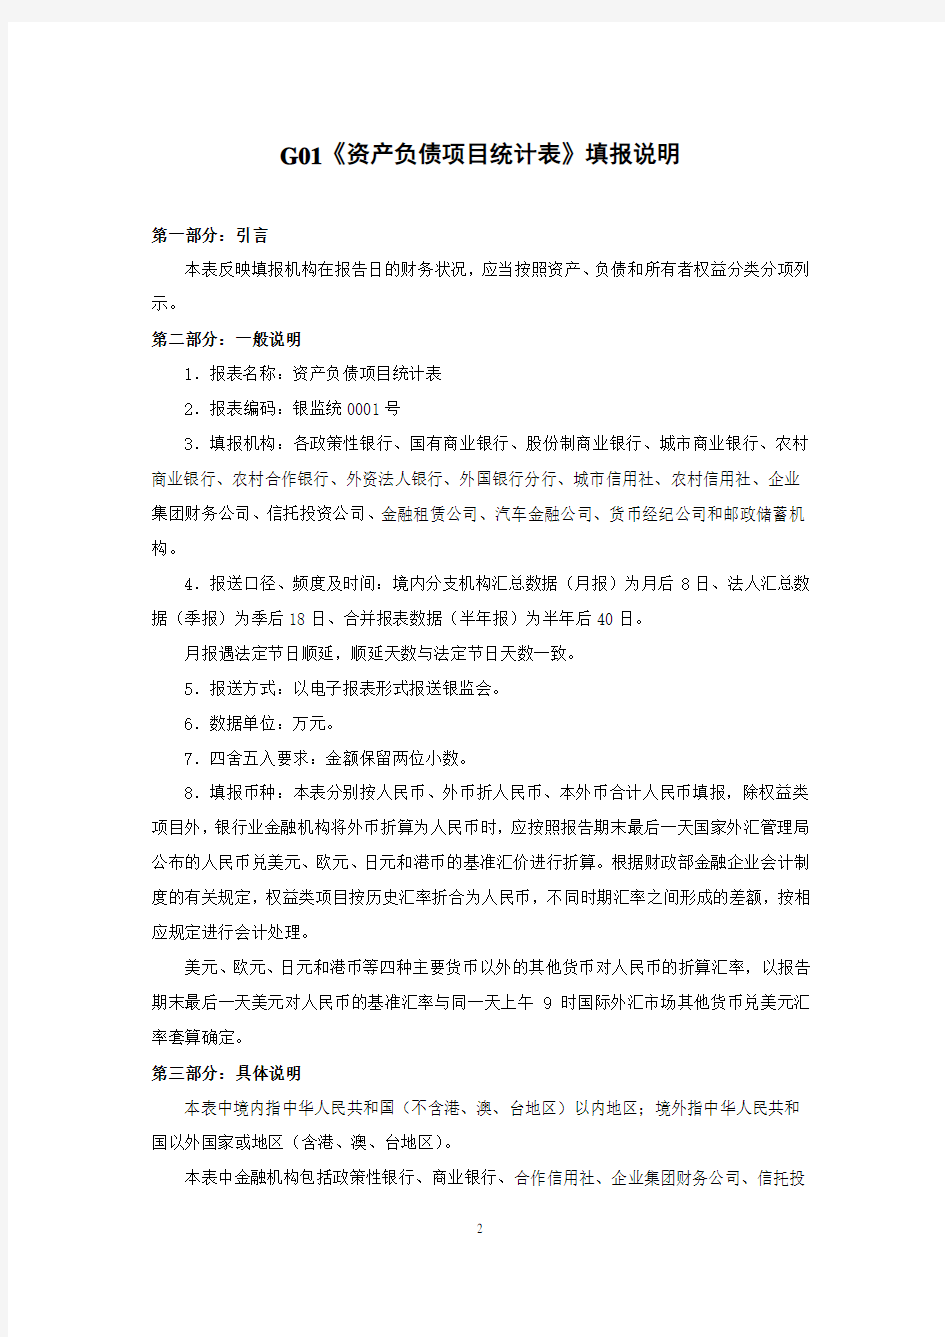 1104基础报表填报说明(最新).pdf